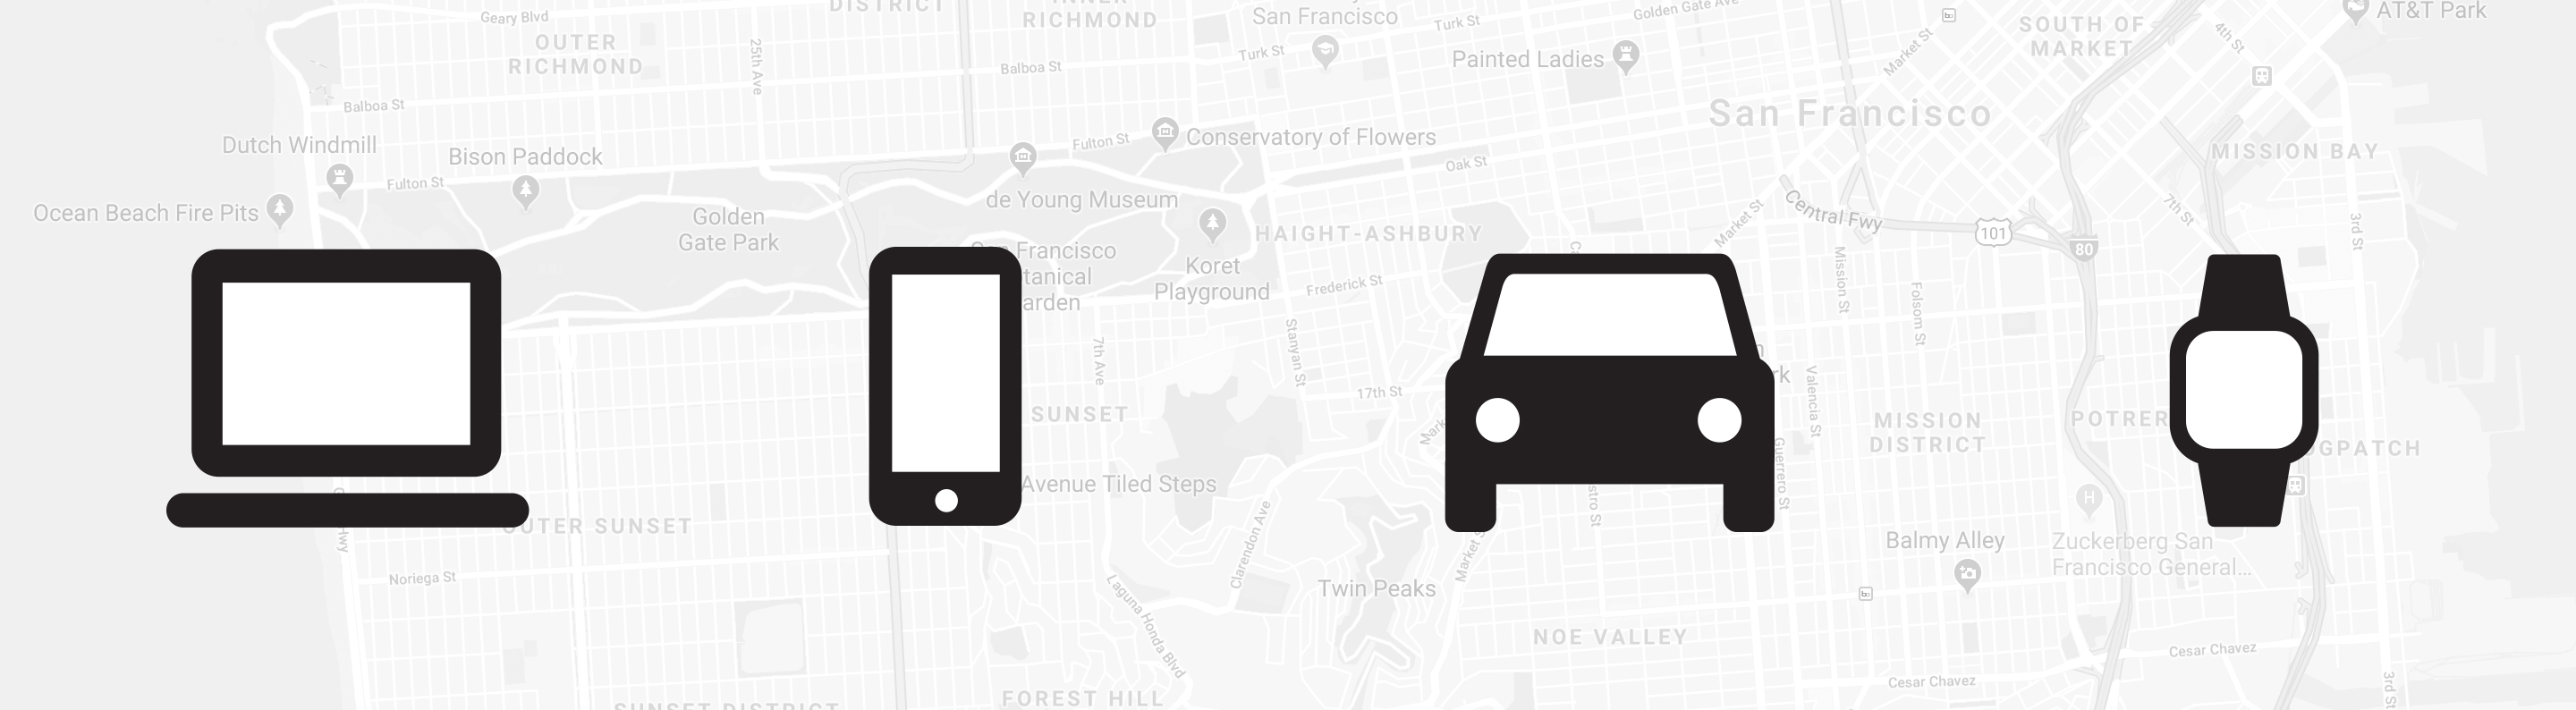 Google Maps API examples